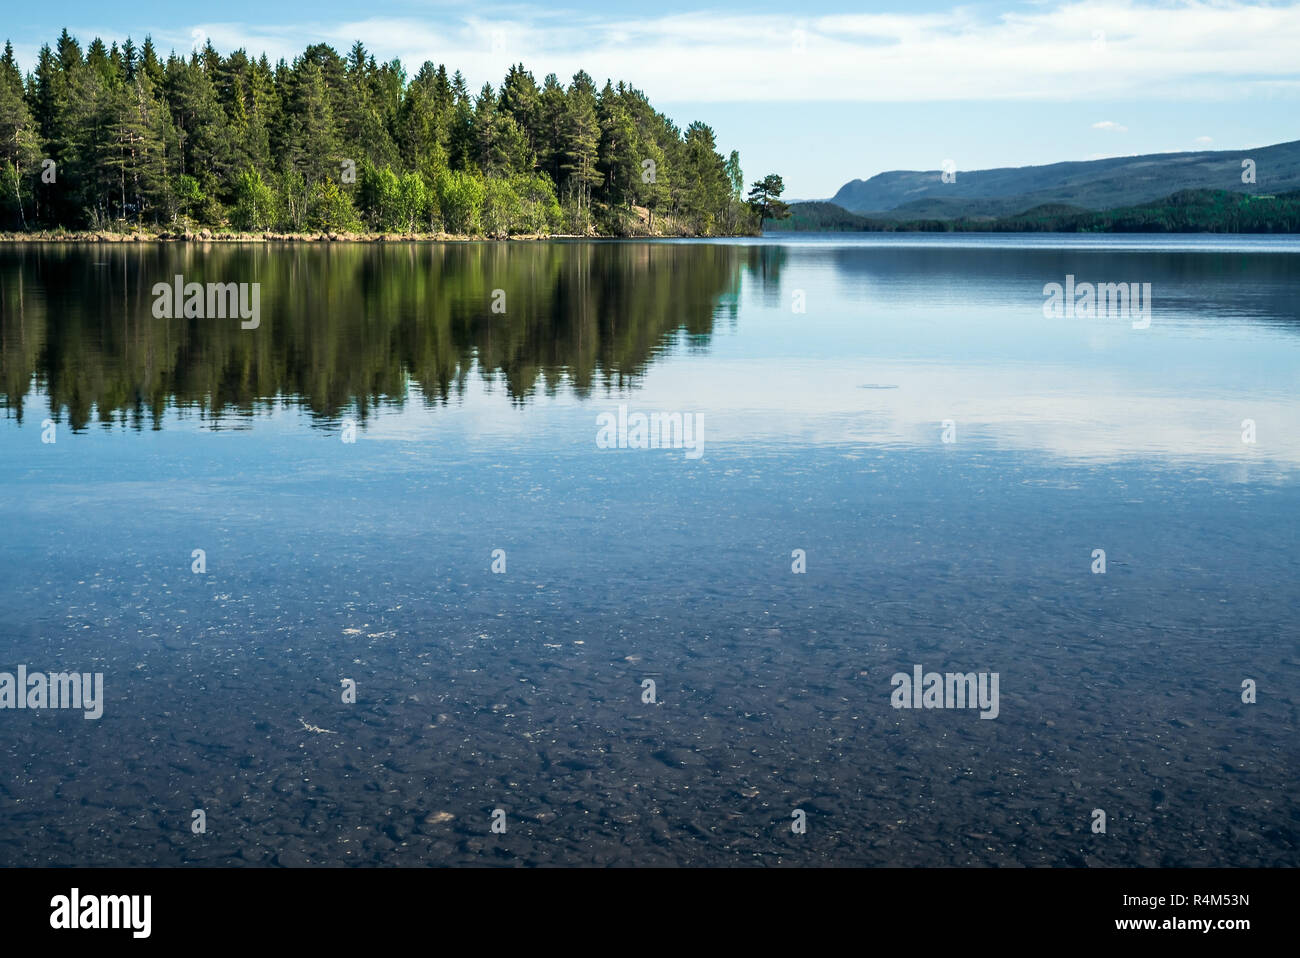 Una tranquilla tranquilla mattinata estiva con vista su crystal clear lago calmo con ciottoli nella parte inferiore e verde bosco riflessa sulla superficie dell'acqua Foto Stock